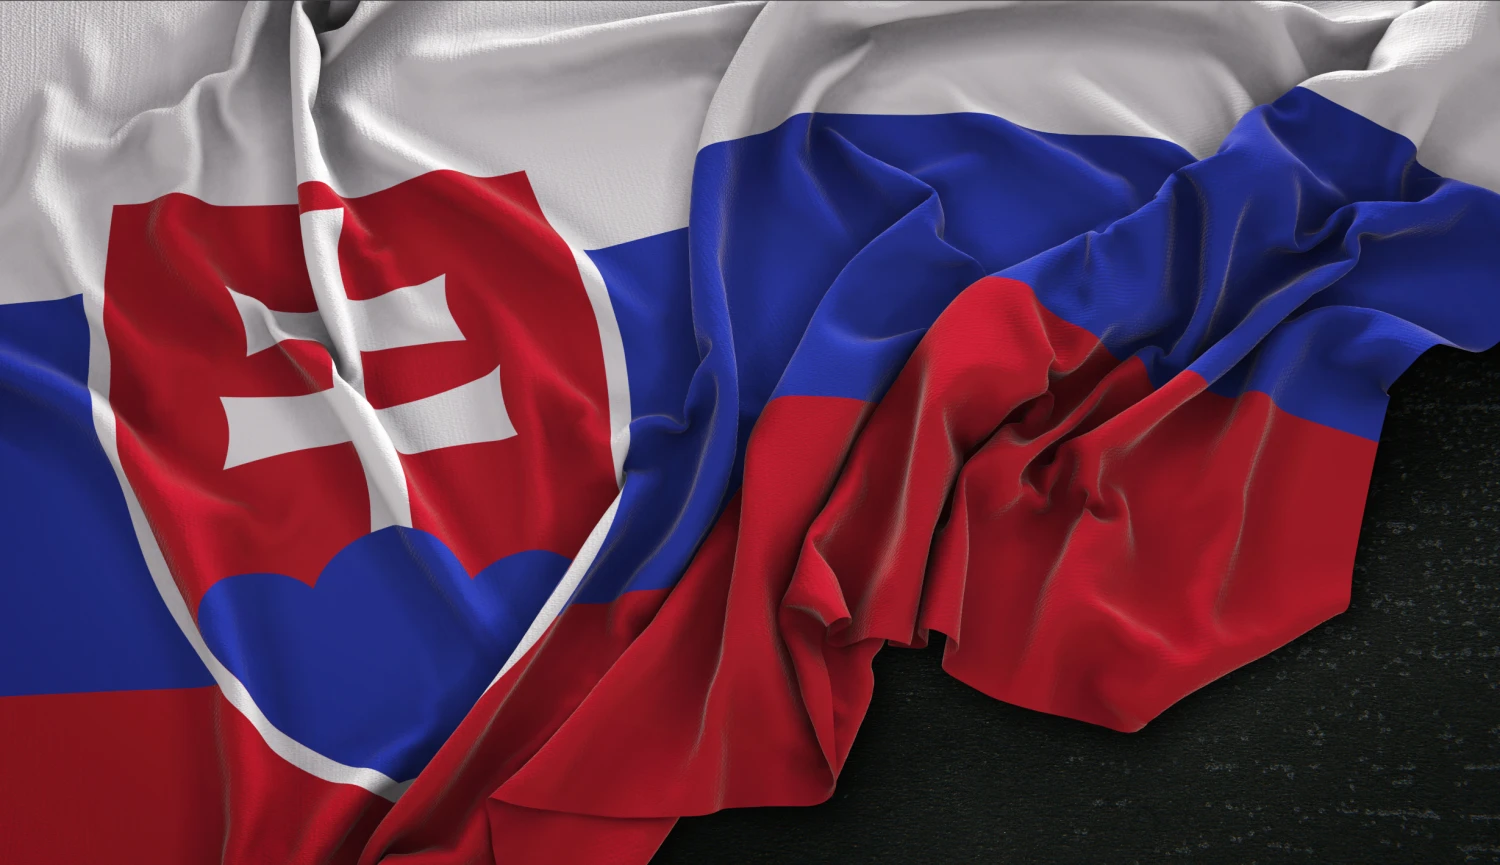 Slovenská ekonomika posiluje. HDP meziročně vzrostl o 2,7 procenta